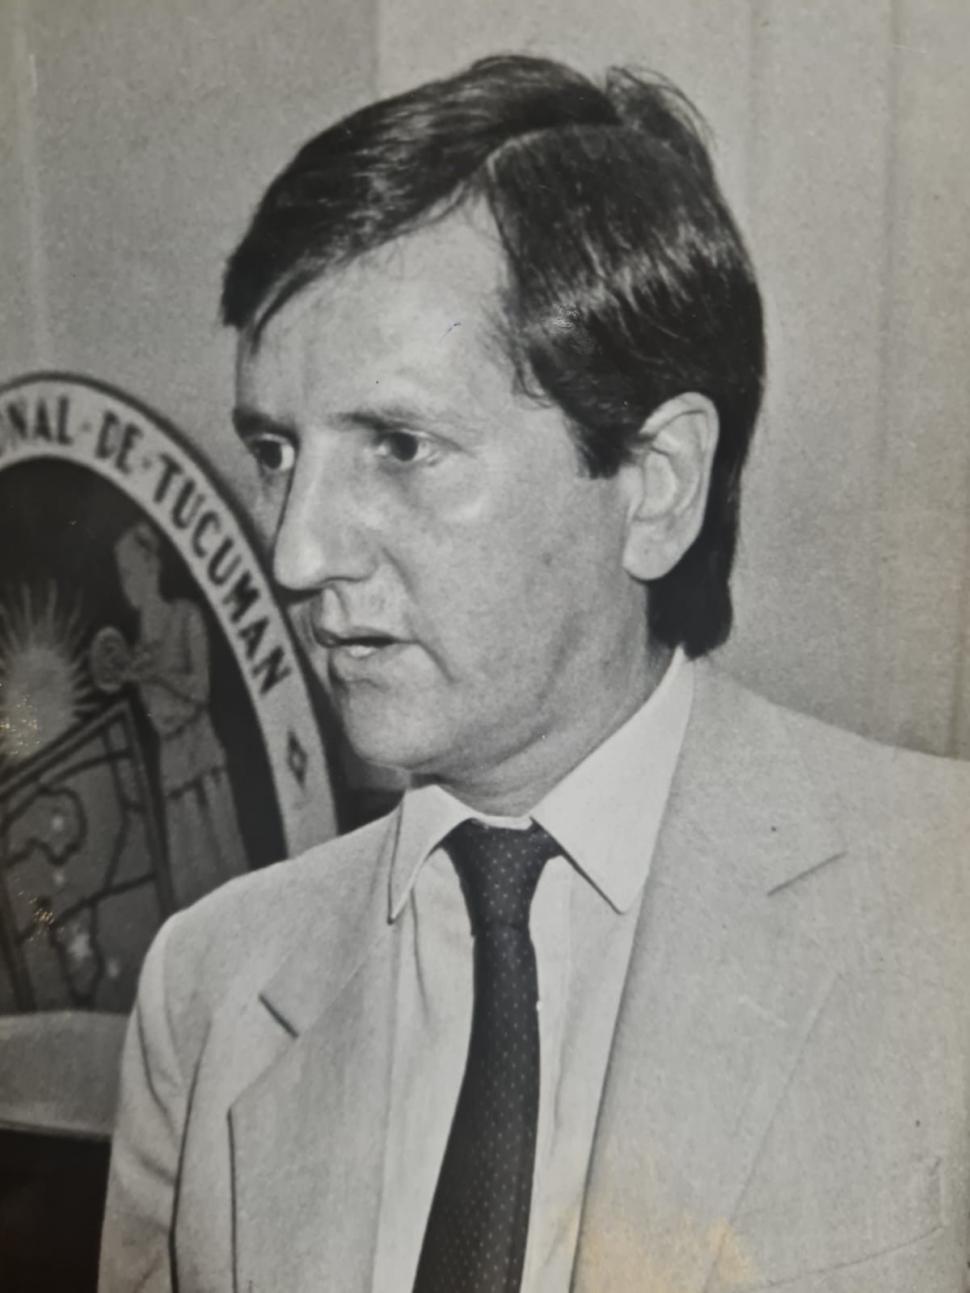 1986. Rodolfo Martín Campero superó a Virla en la elección y juró como Rector el 16 de abril.